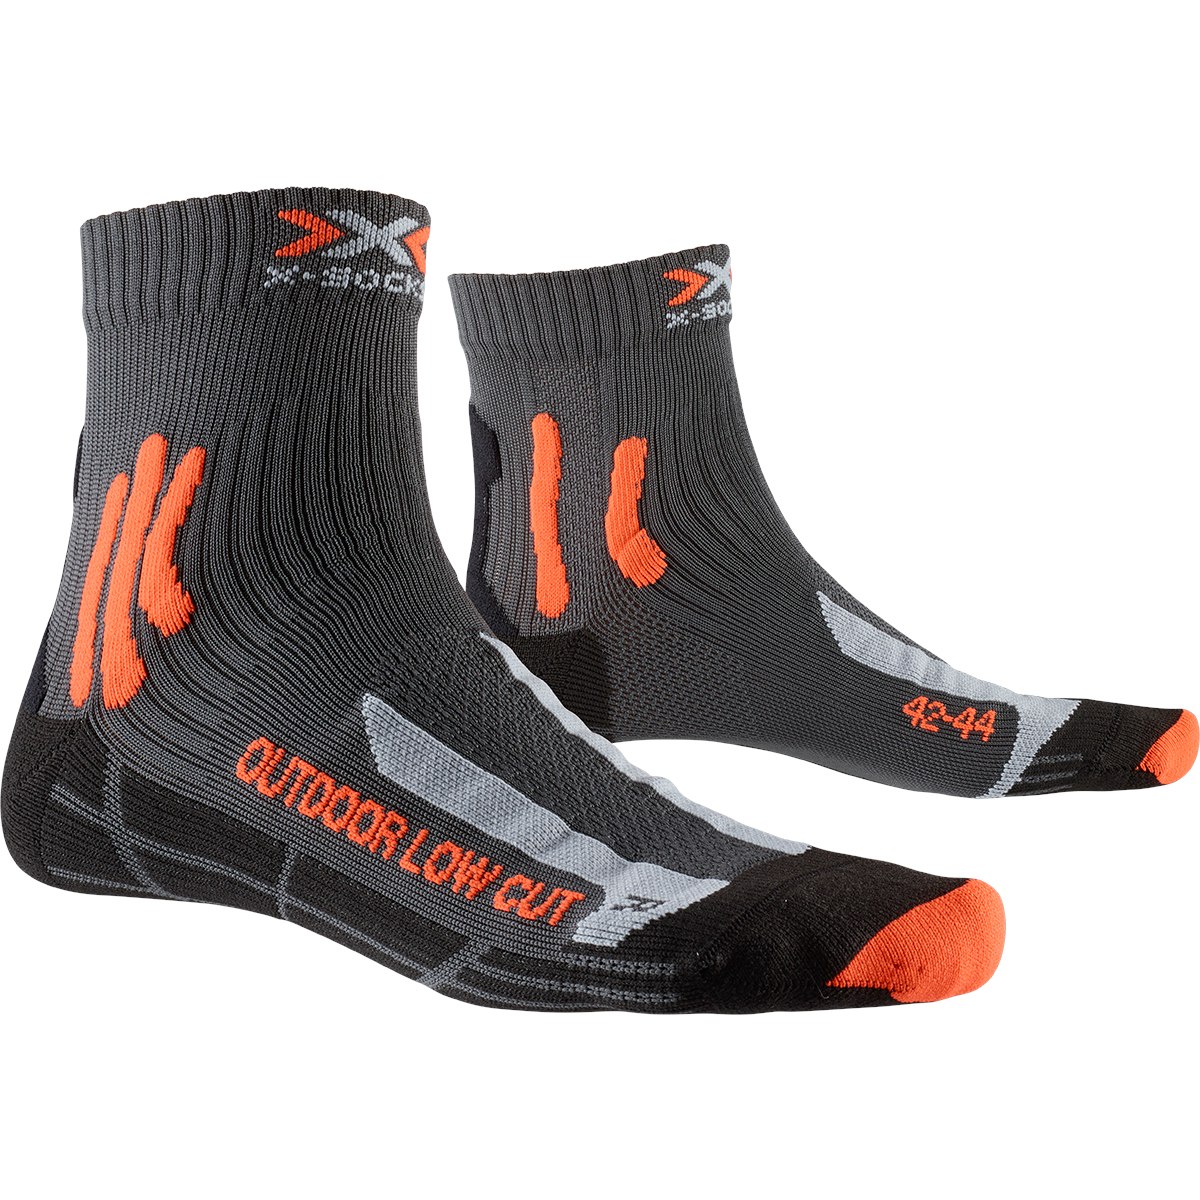 Produktbild von X-Socks Trek Outdoor Low Cut Socken - anthracite/orange